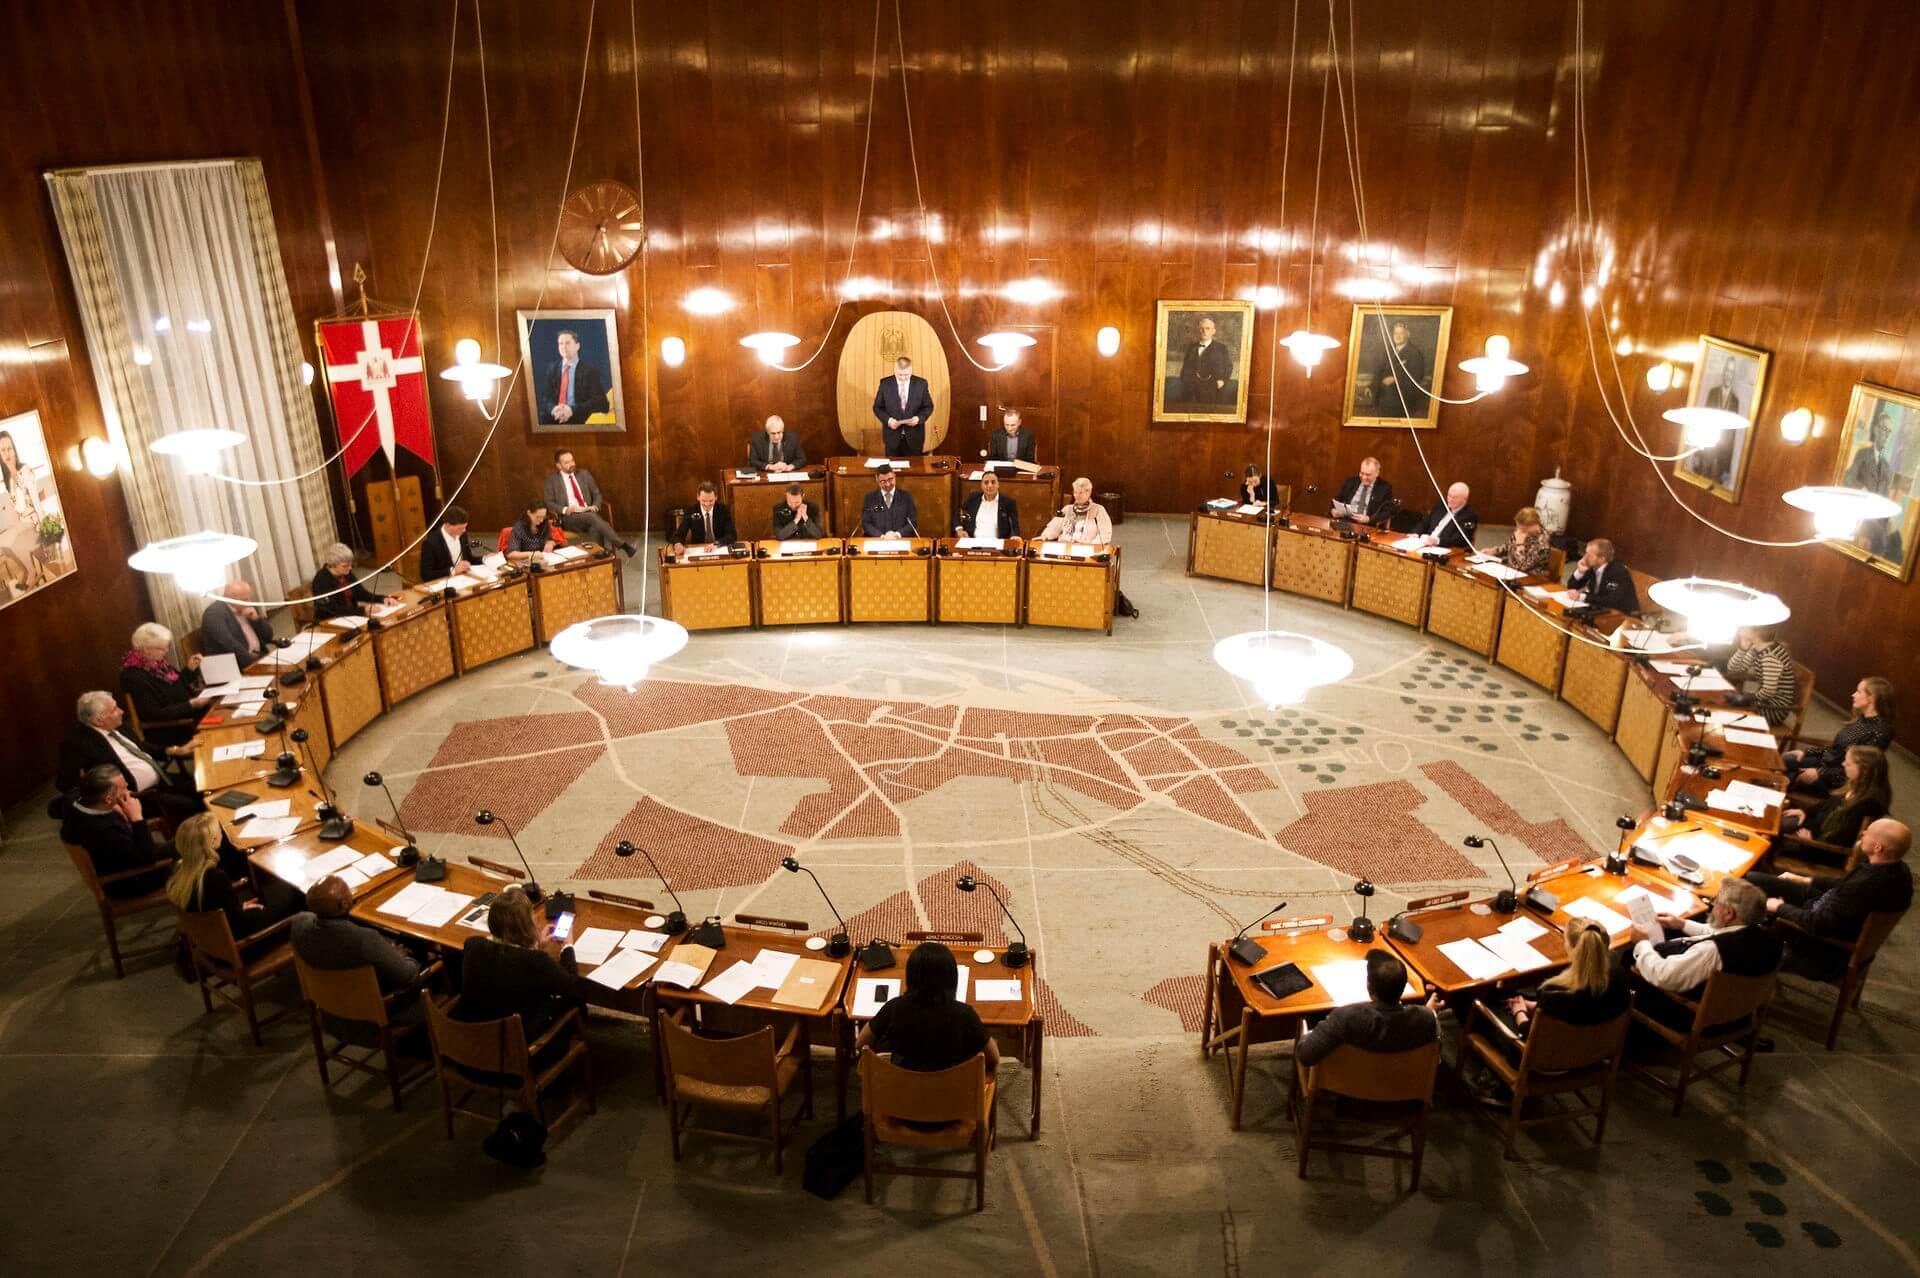 Kommunalpolitiske ledere samlet i byrådssalen i Aarhus til det konstituerende møde efter kommunalvalget i 2017.